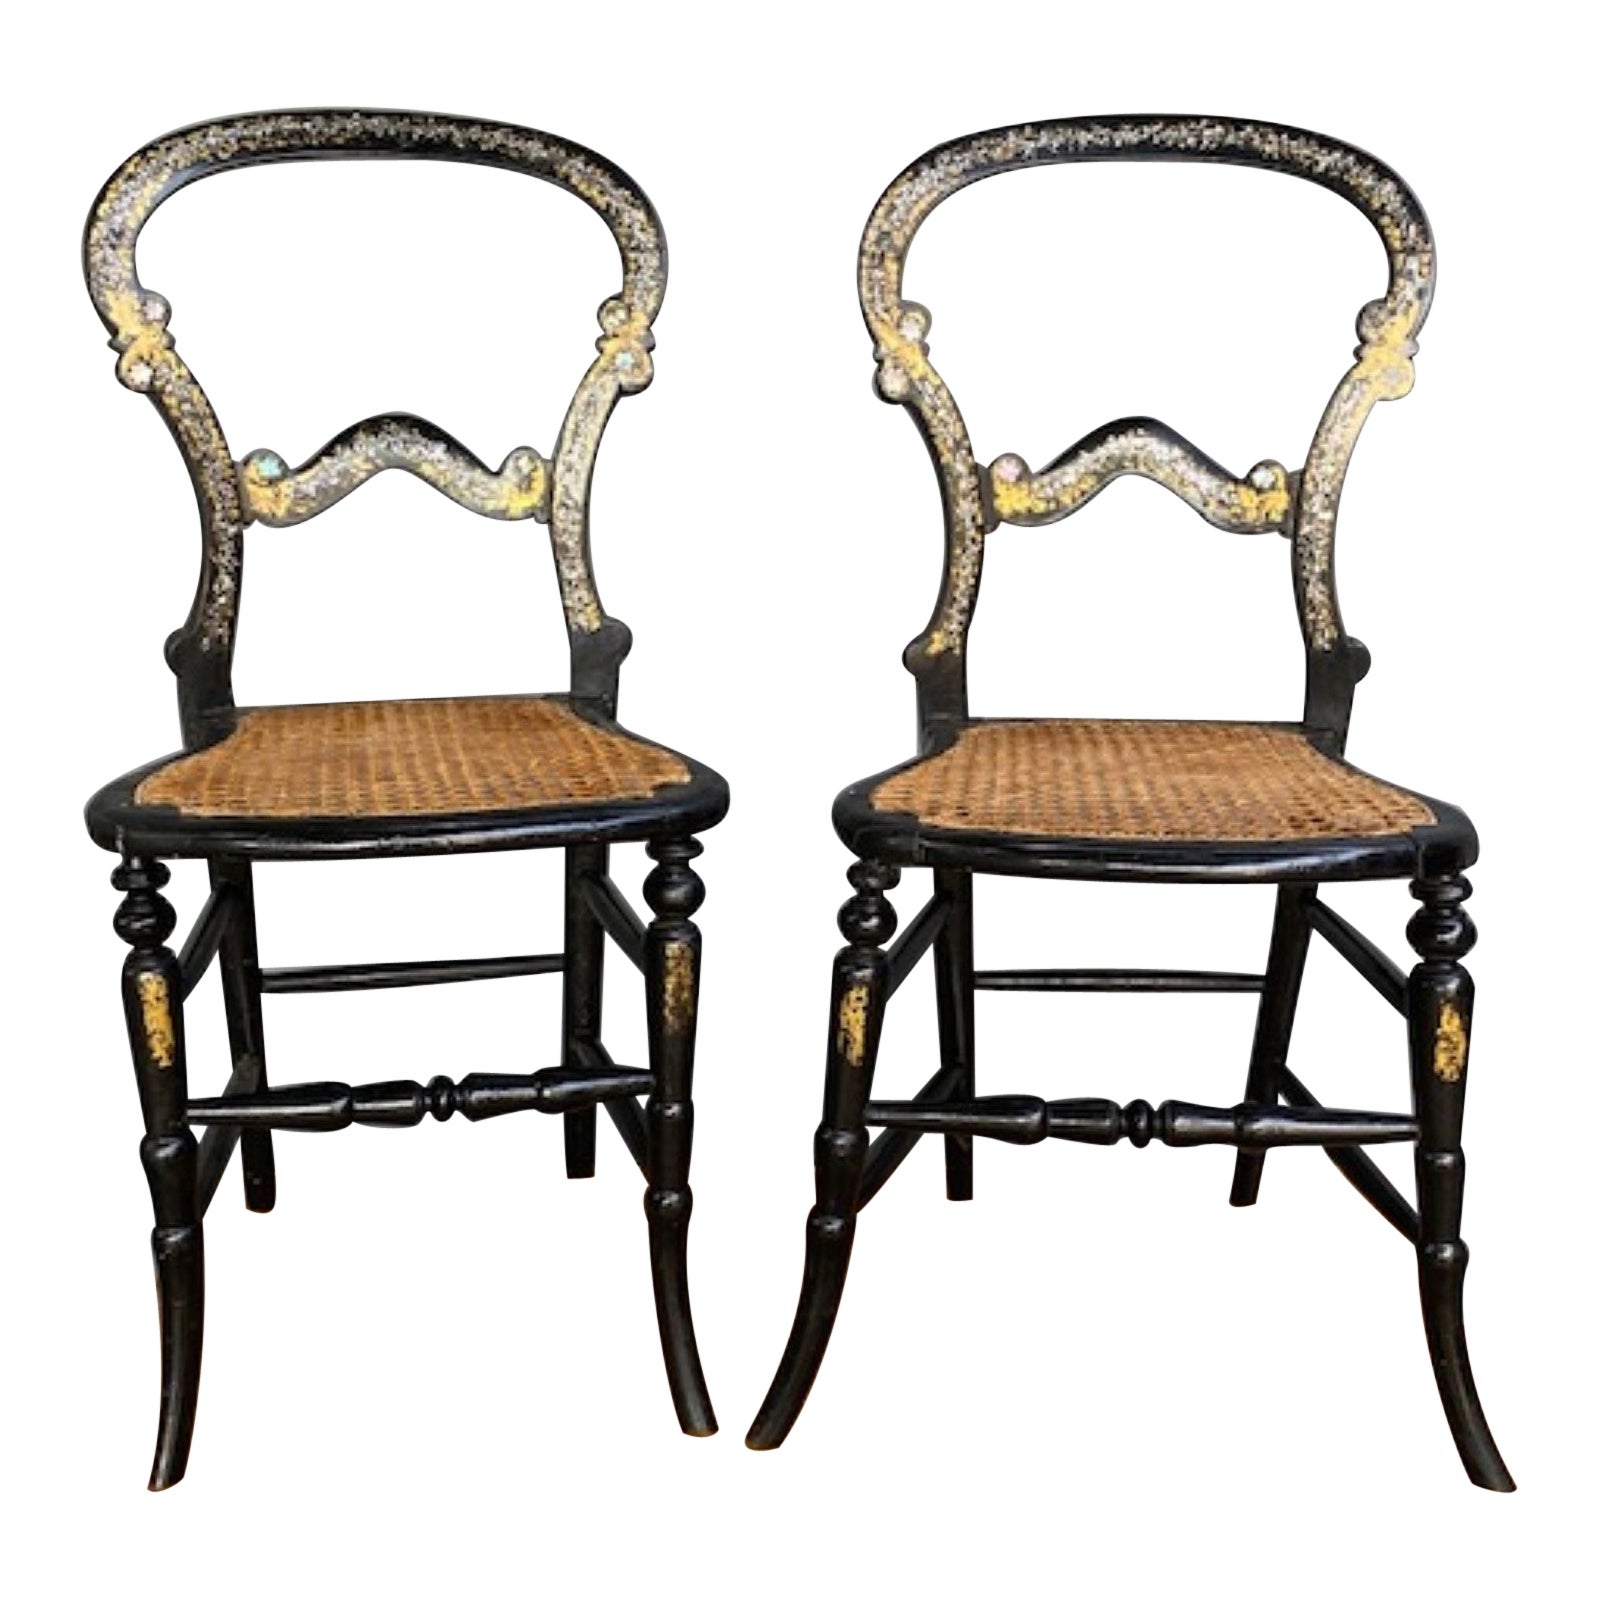 Paar aus dem 19. Jahrhundert. Antike englische viktorianische ebonisierte Beistellstühle, um 1860